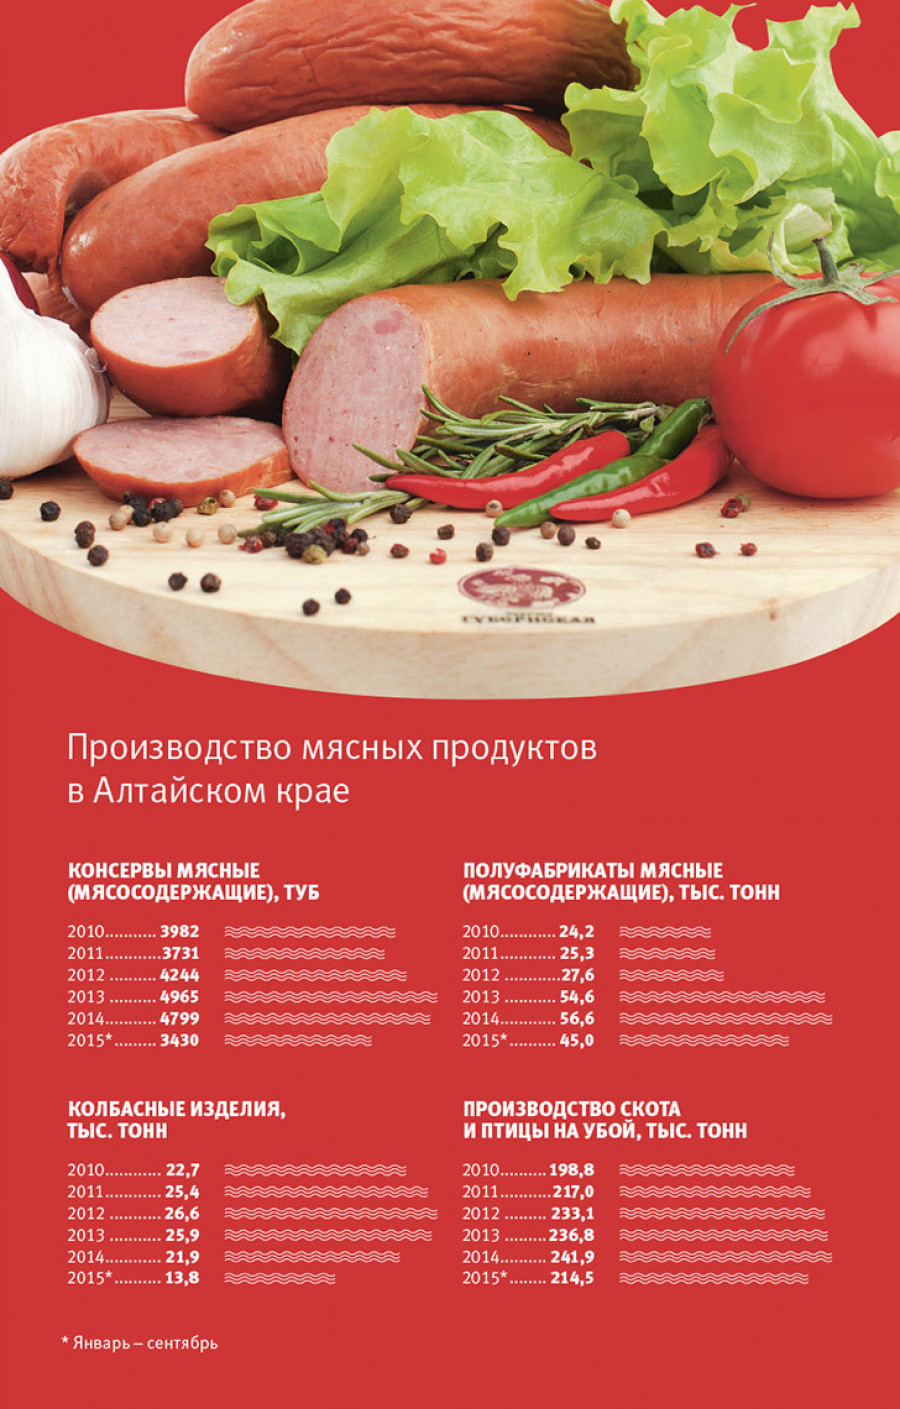 Производство мясной продукции в Алтайском крае.